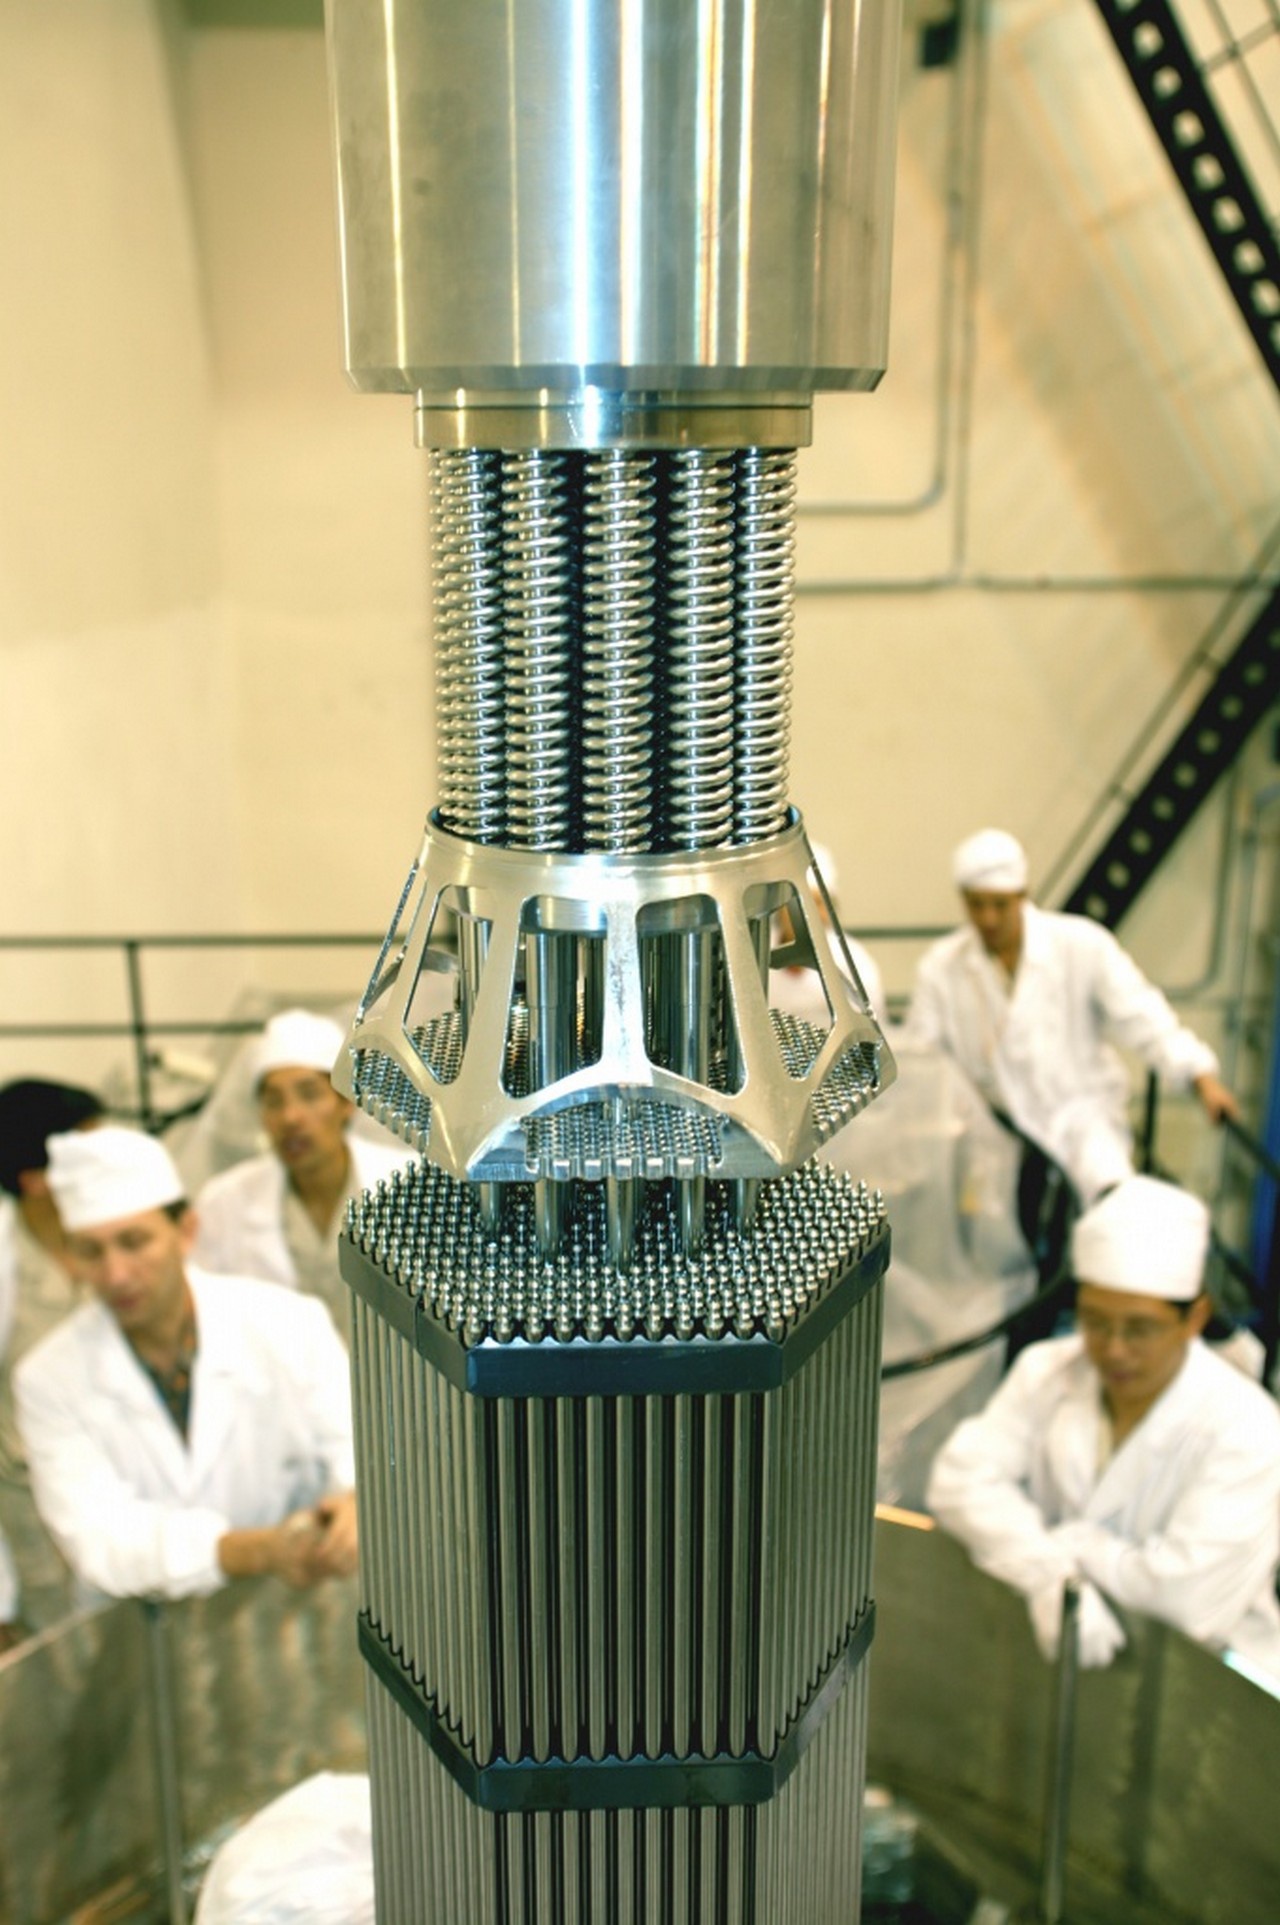 Один и тот же процесс - обогащение урана - может быть использован как для получения ядерного топлива для АЭС, так и в создании ядерной бомбы.